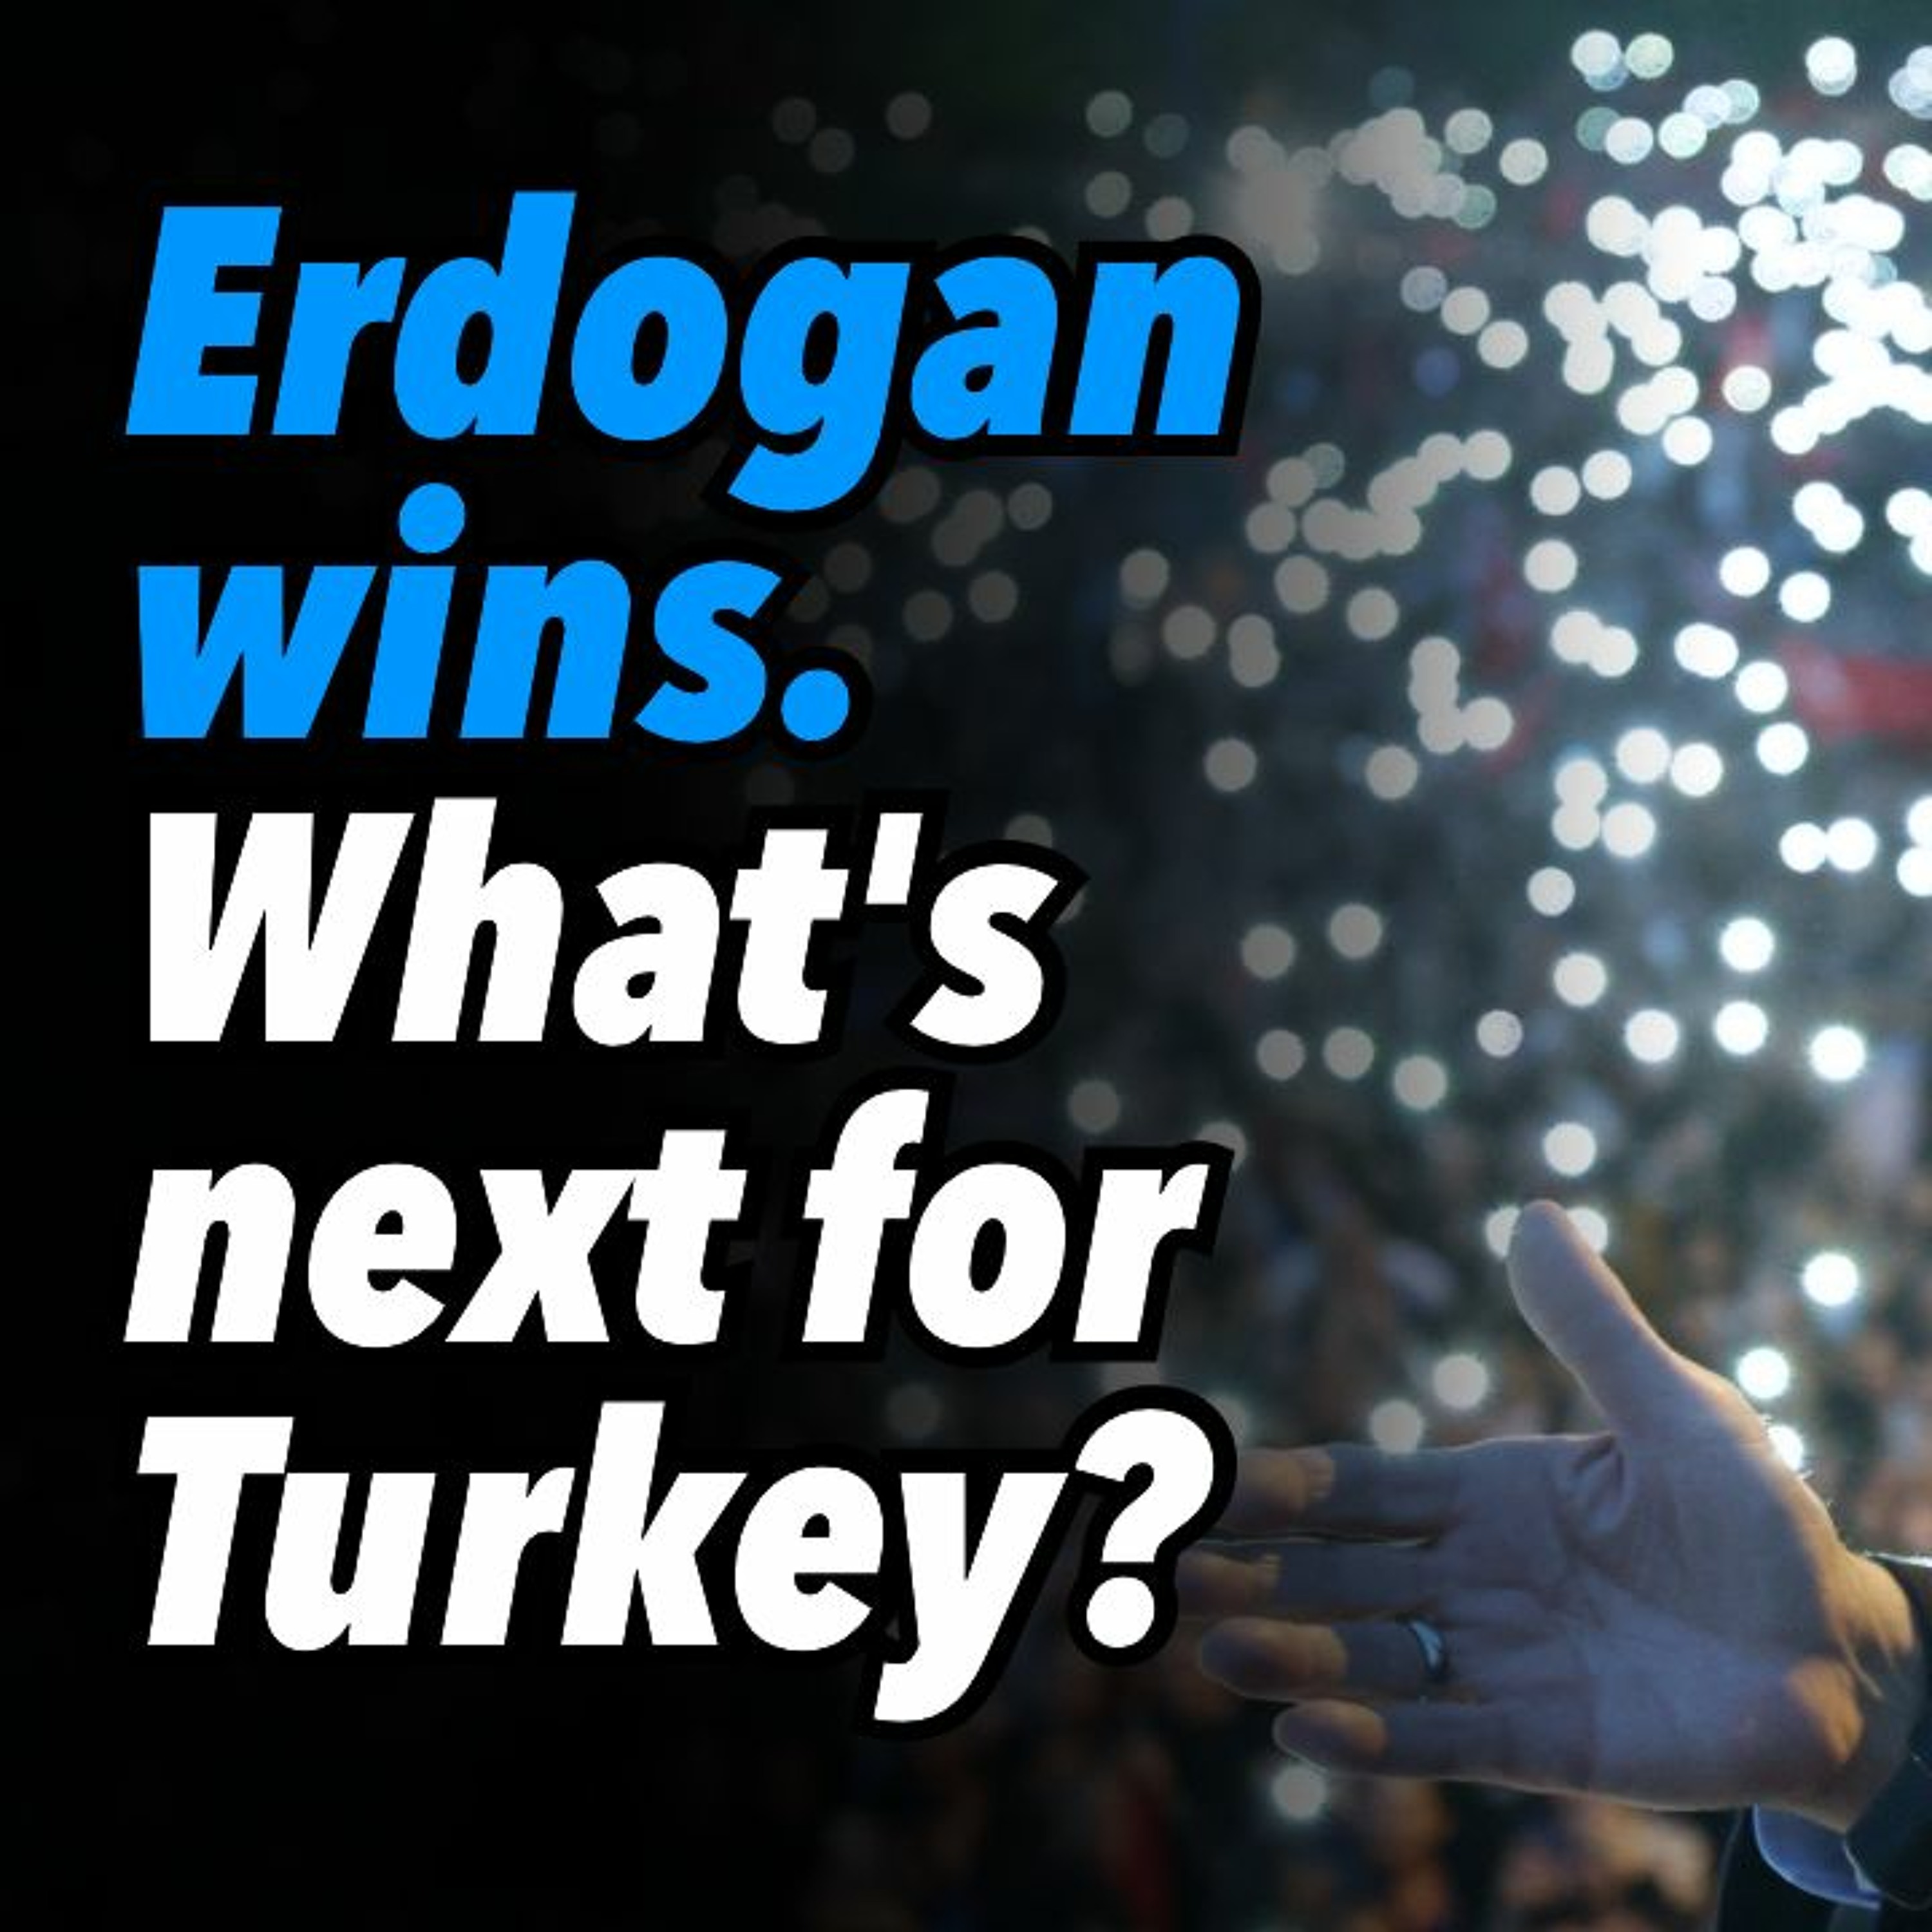 Erdogan wins. What's next for Turkey?